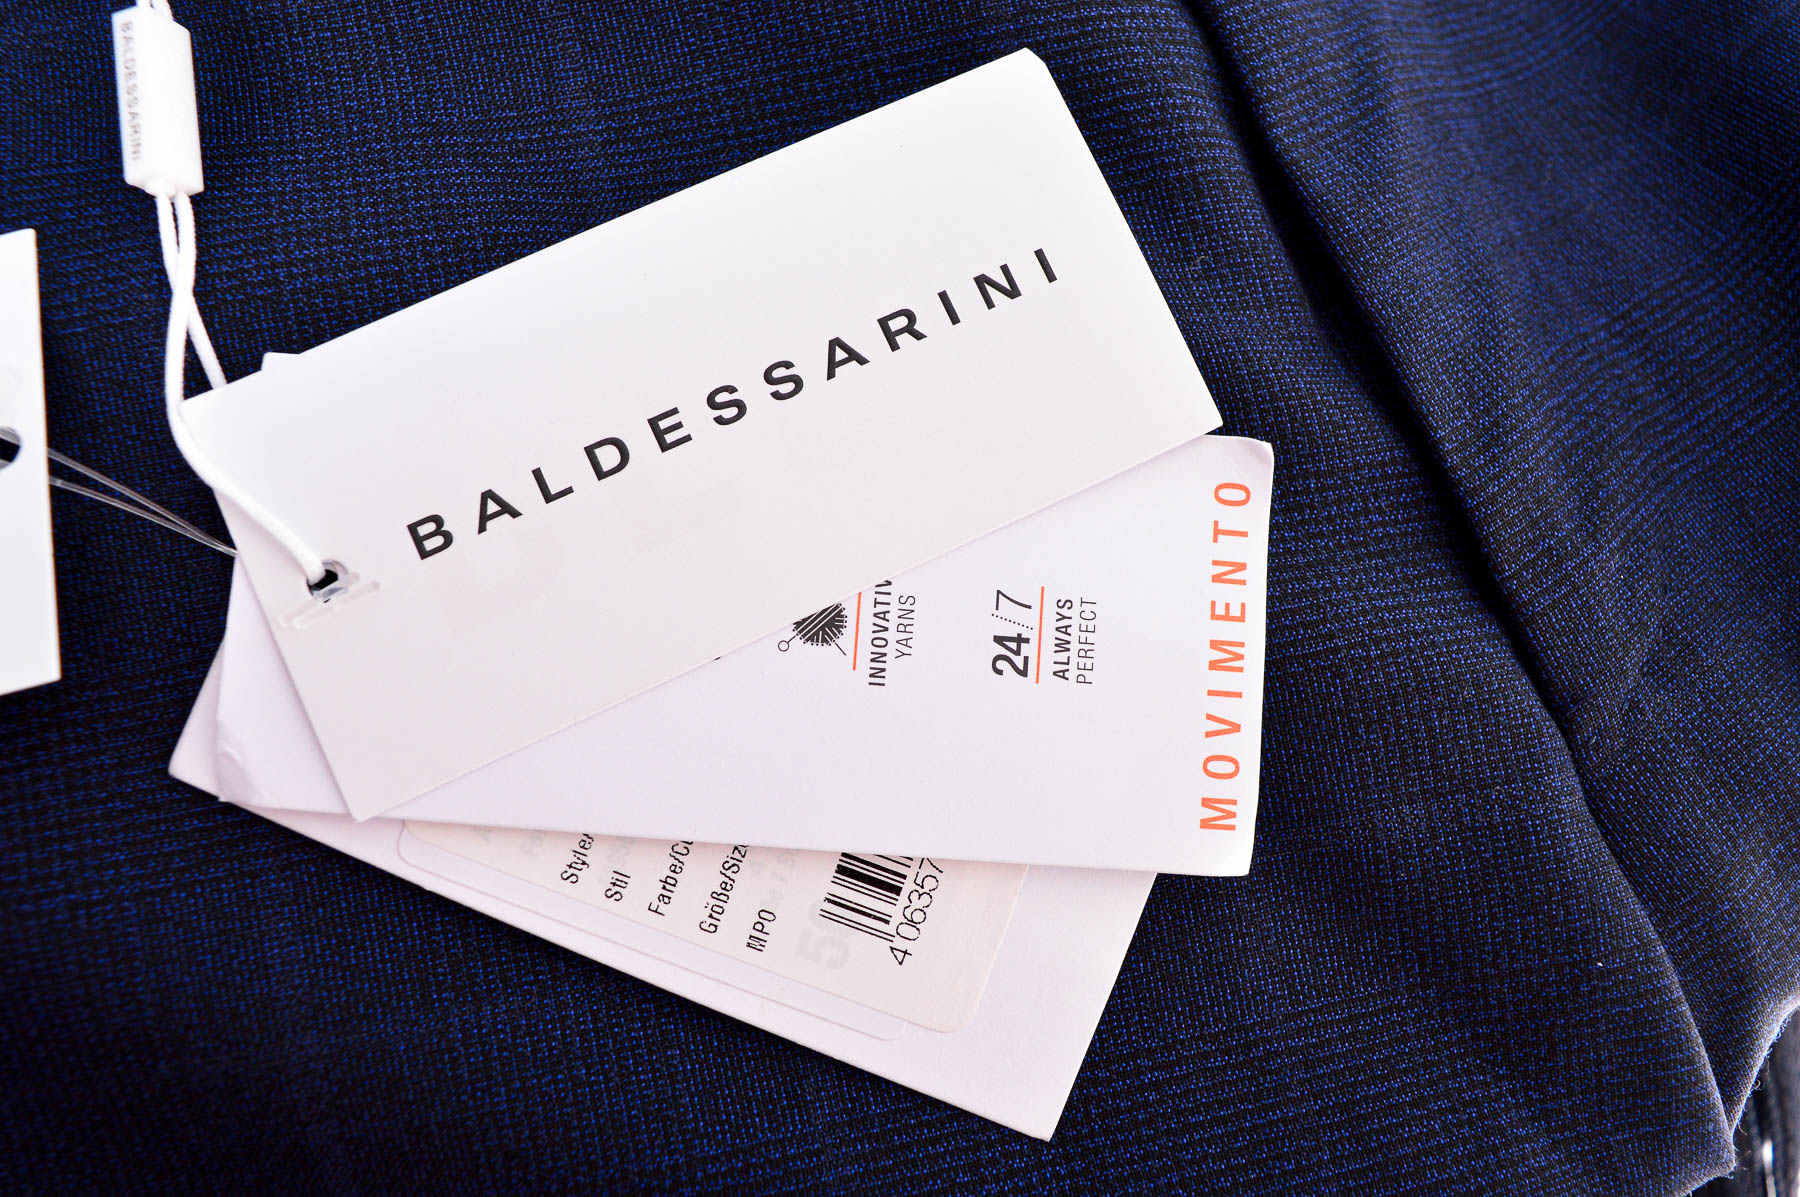 Pantalon pentru bărbați - Baldessarini - 2